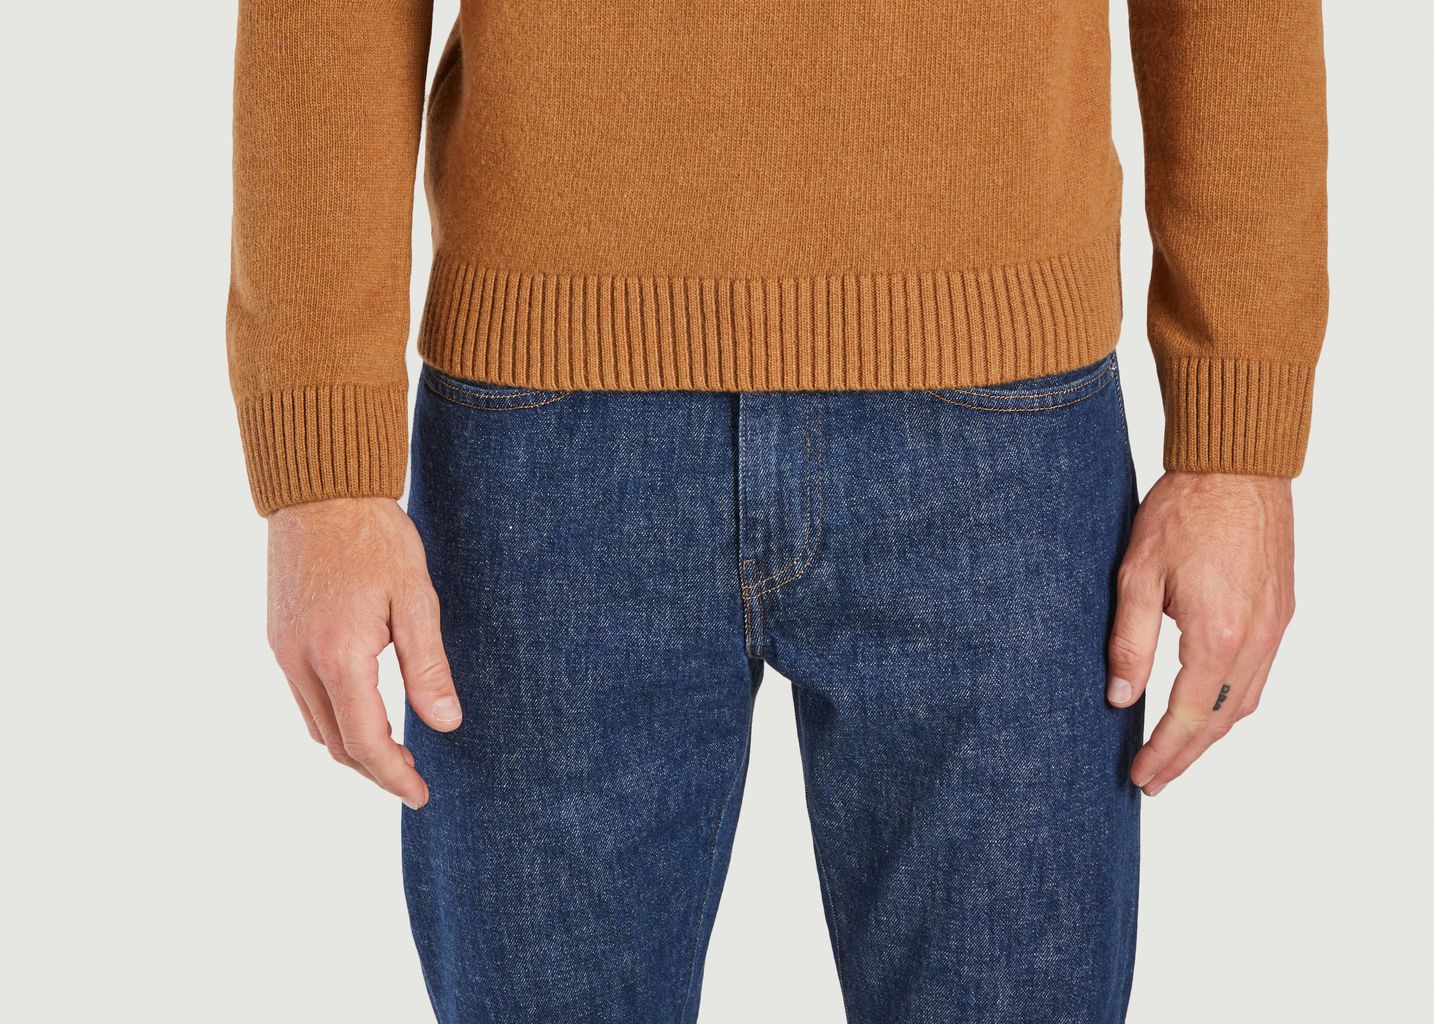 Klassischer Pullover aus Merinowolle - Colorful Standard